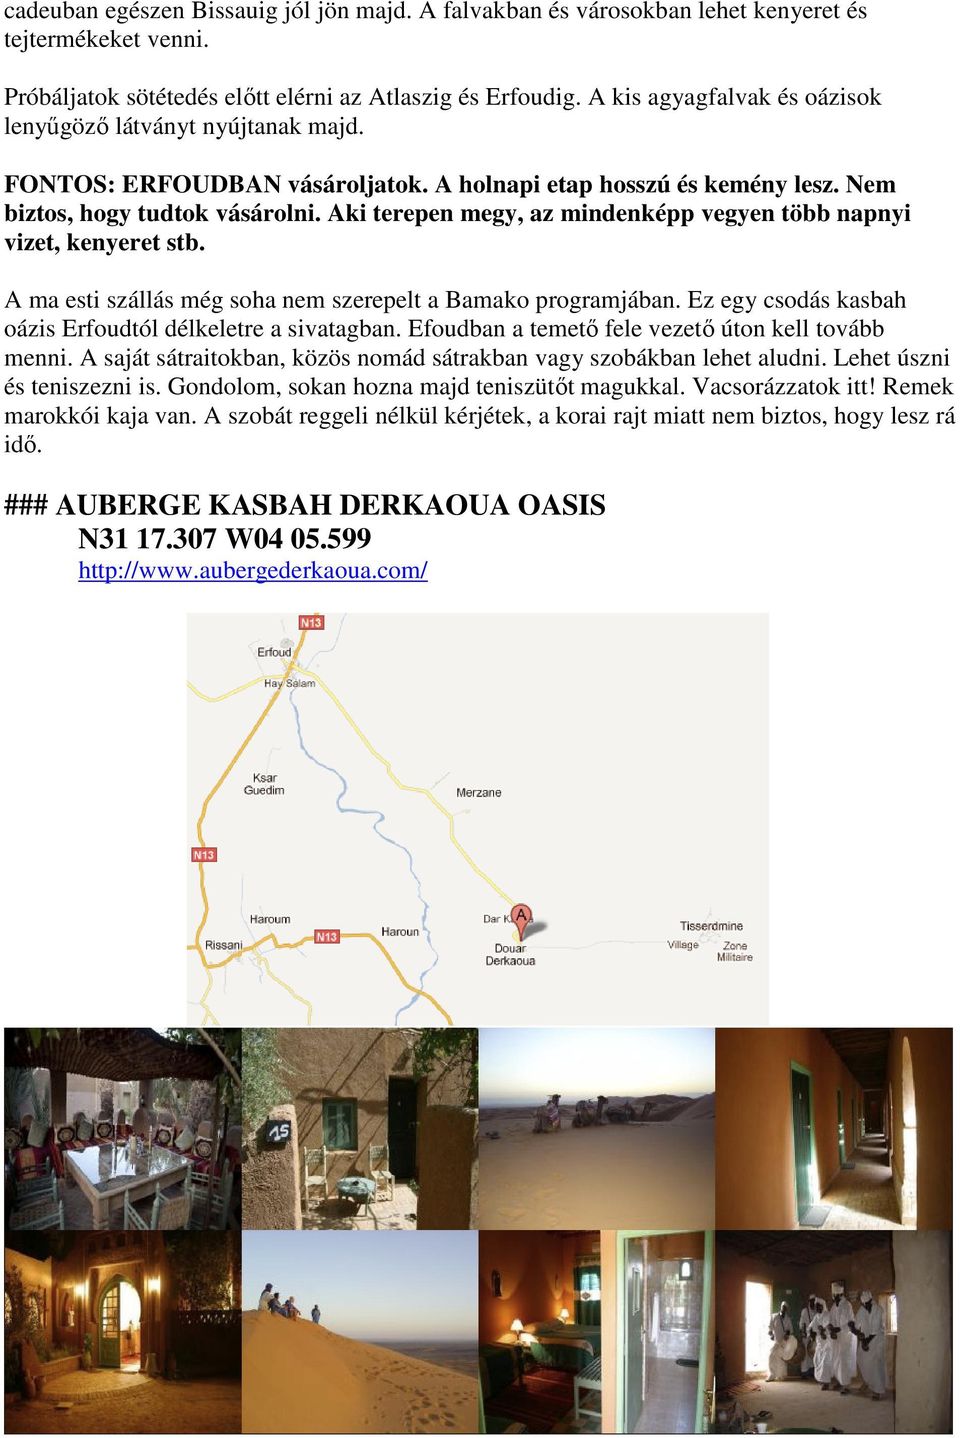 Aki terepen megy, az mindenképp vegyen több napnyi vizet, kenyeret stb. A ma esti szállás még soha nem szerepelt a Bamako programjában. Ez egy csodás kasbah oázis Erfoudtól délkeletre a sivatagban.